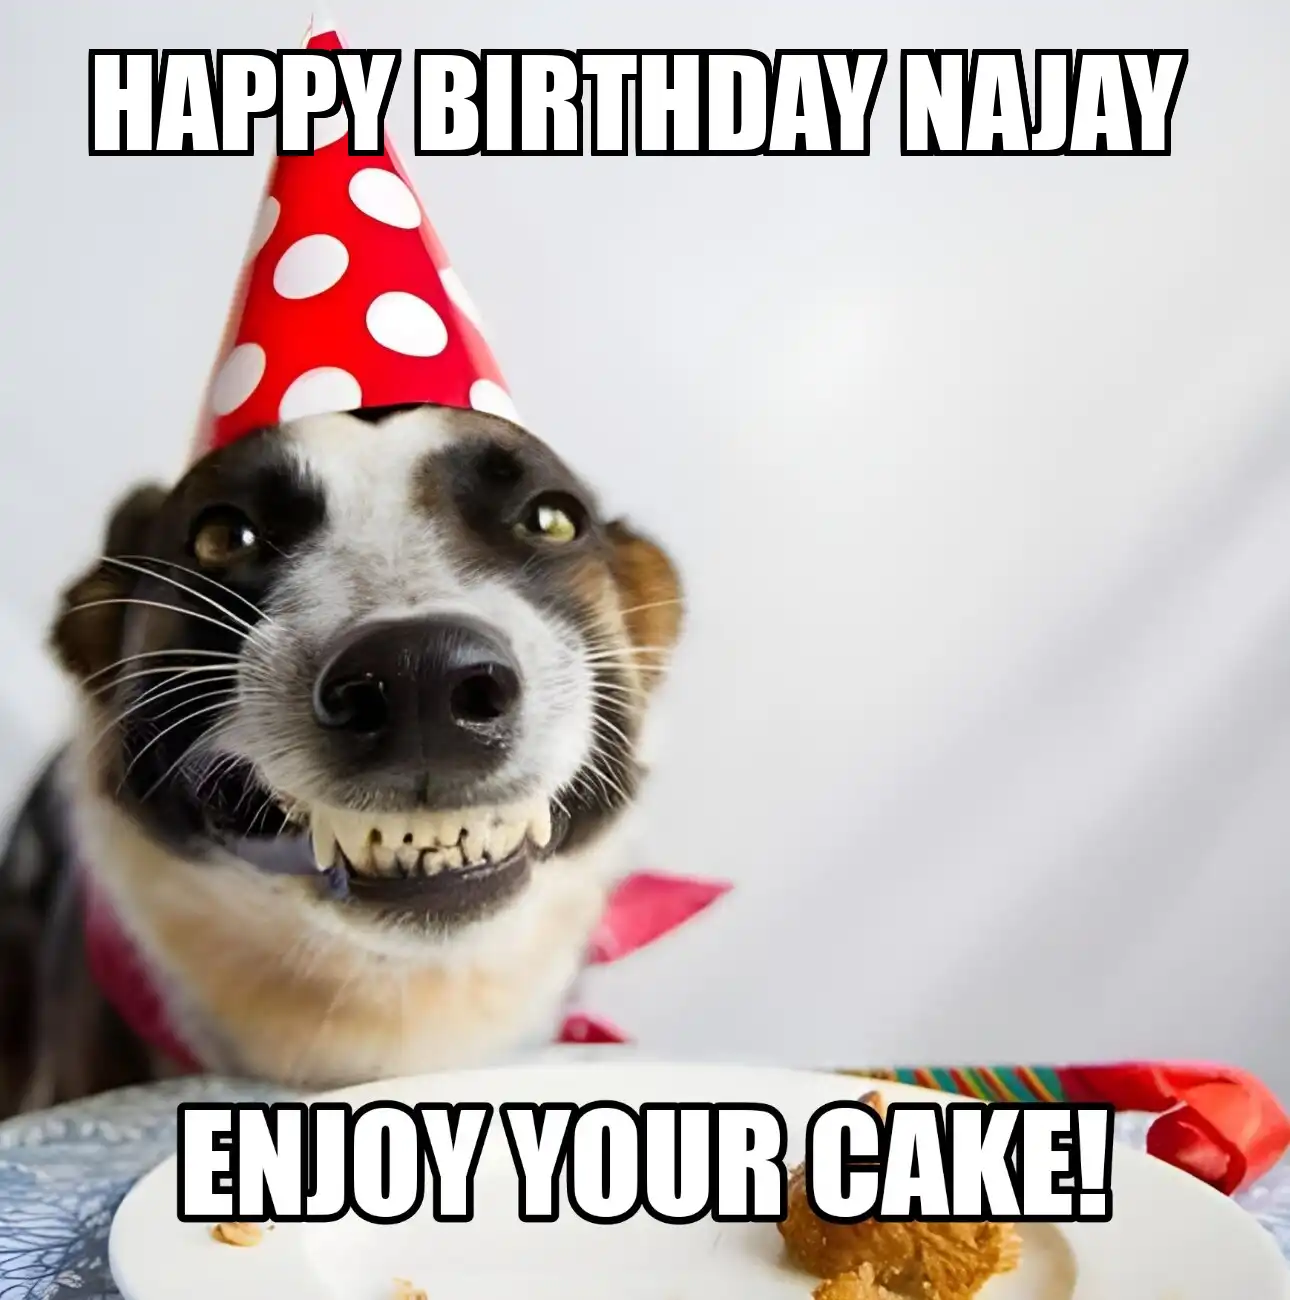 Happy Birthday Najay Enjoy Your Cake Dog Meme